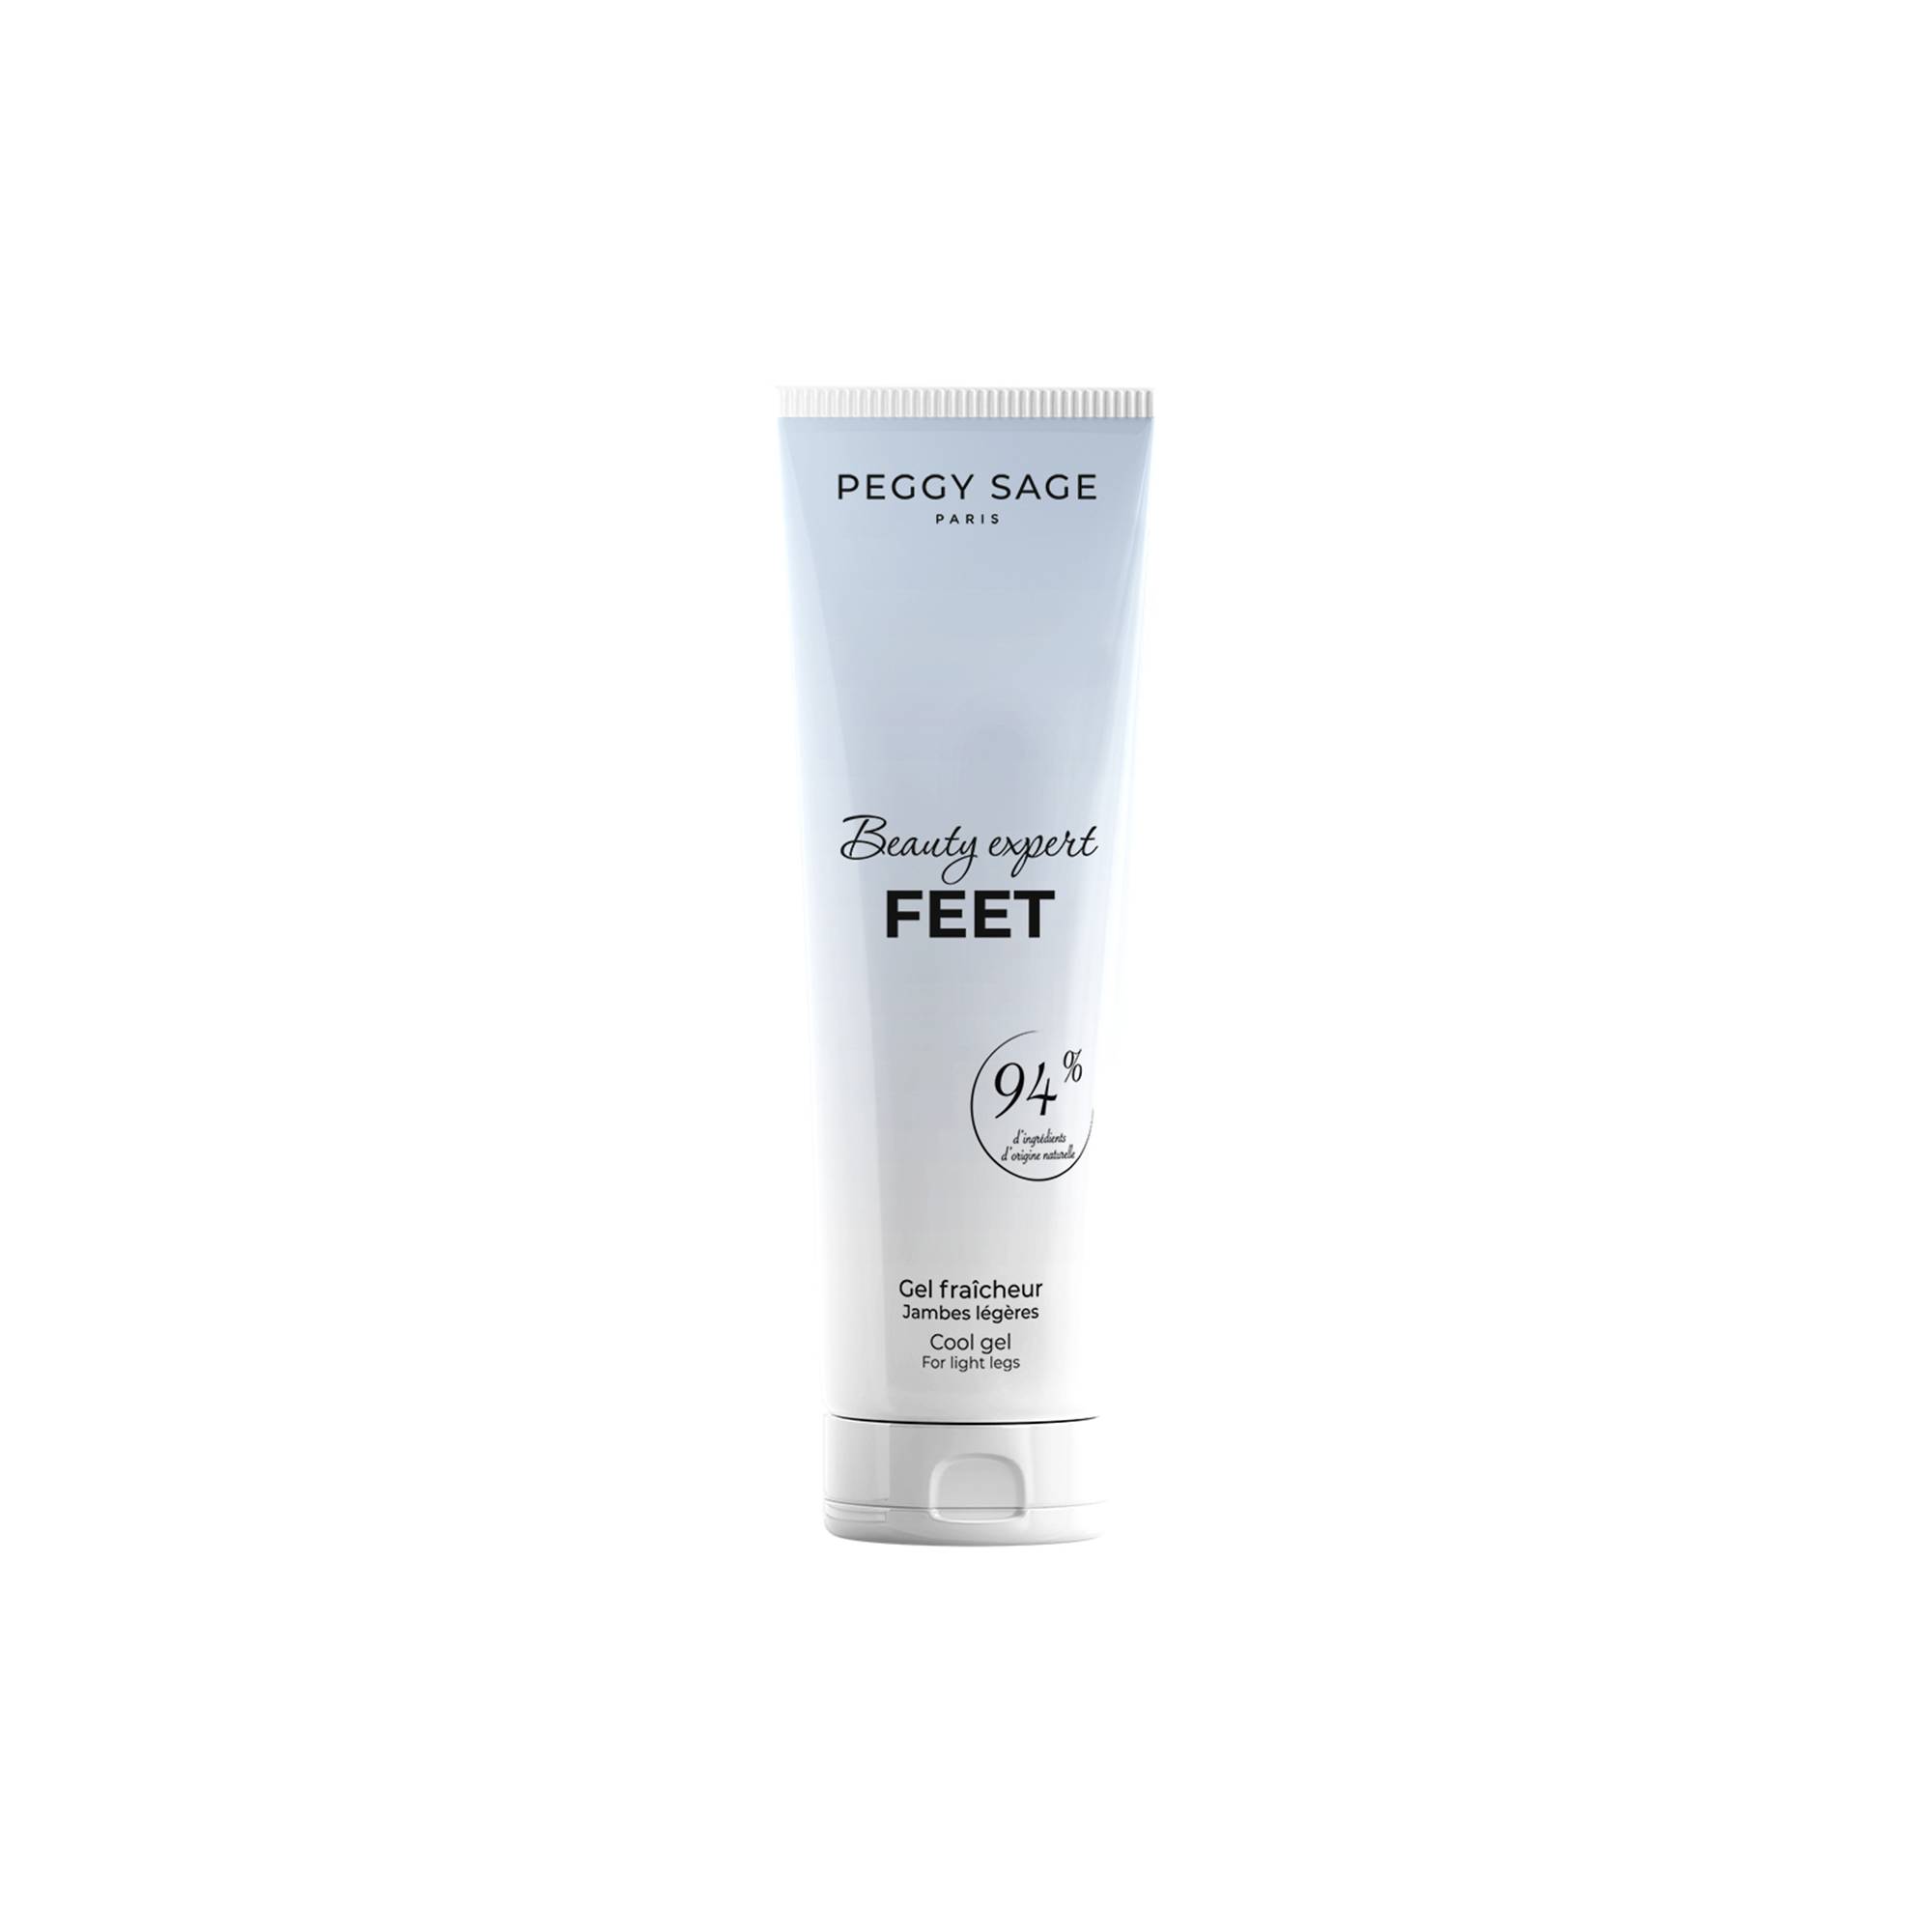 Gel fraîcheur jambes légères Beauty expert Feet de la marque Peggy Sage Contenance 100ml - 1